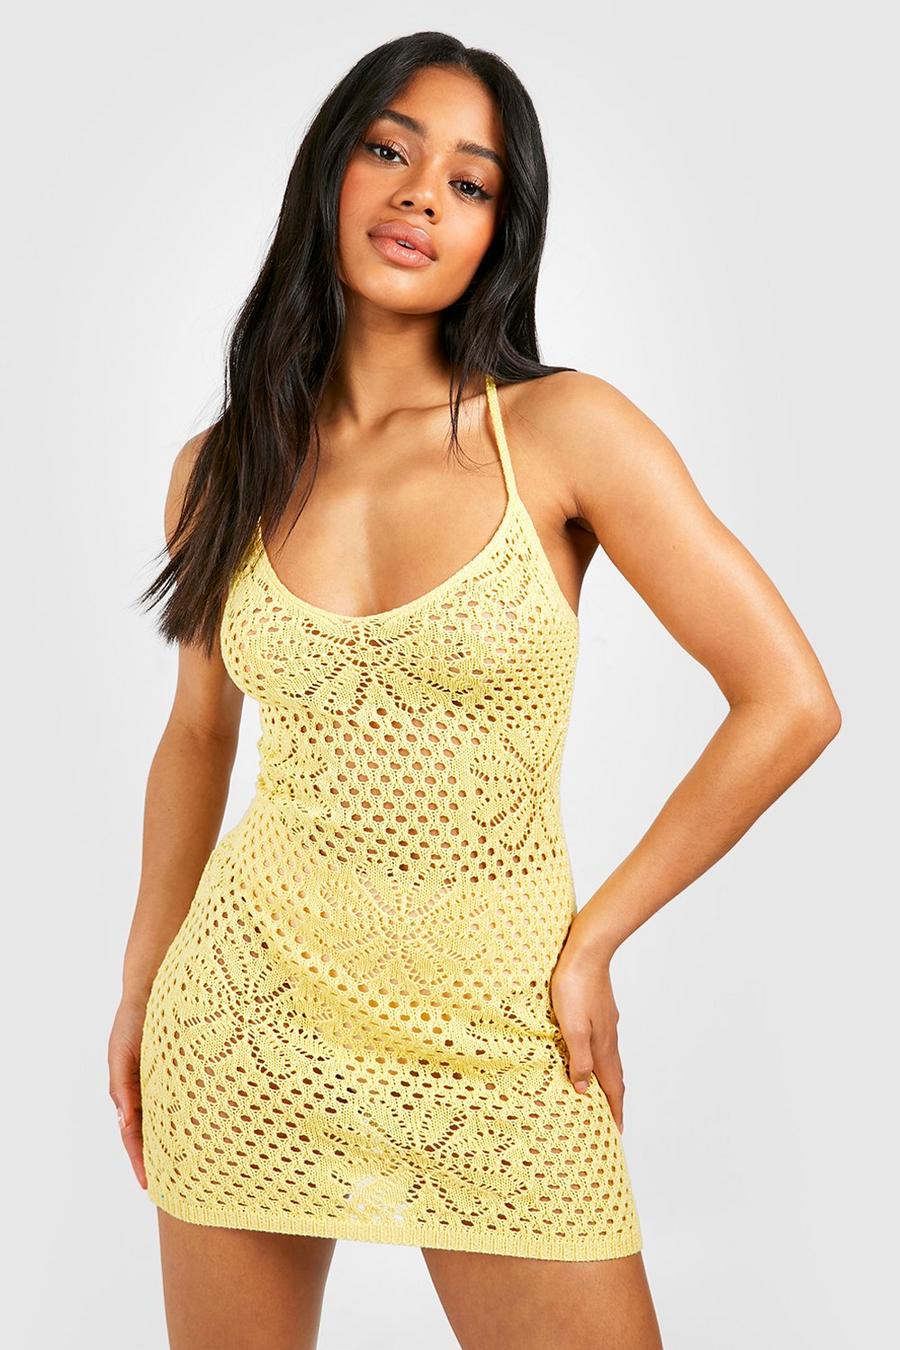 Lemon yellow Floral Knit Strappy Back Mini Dress